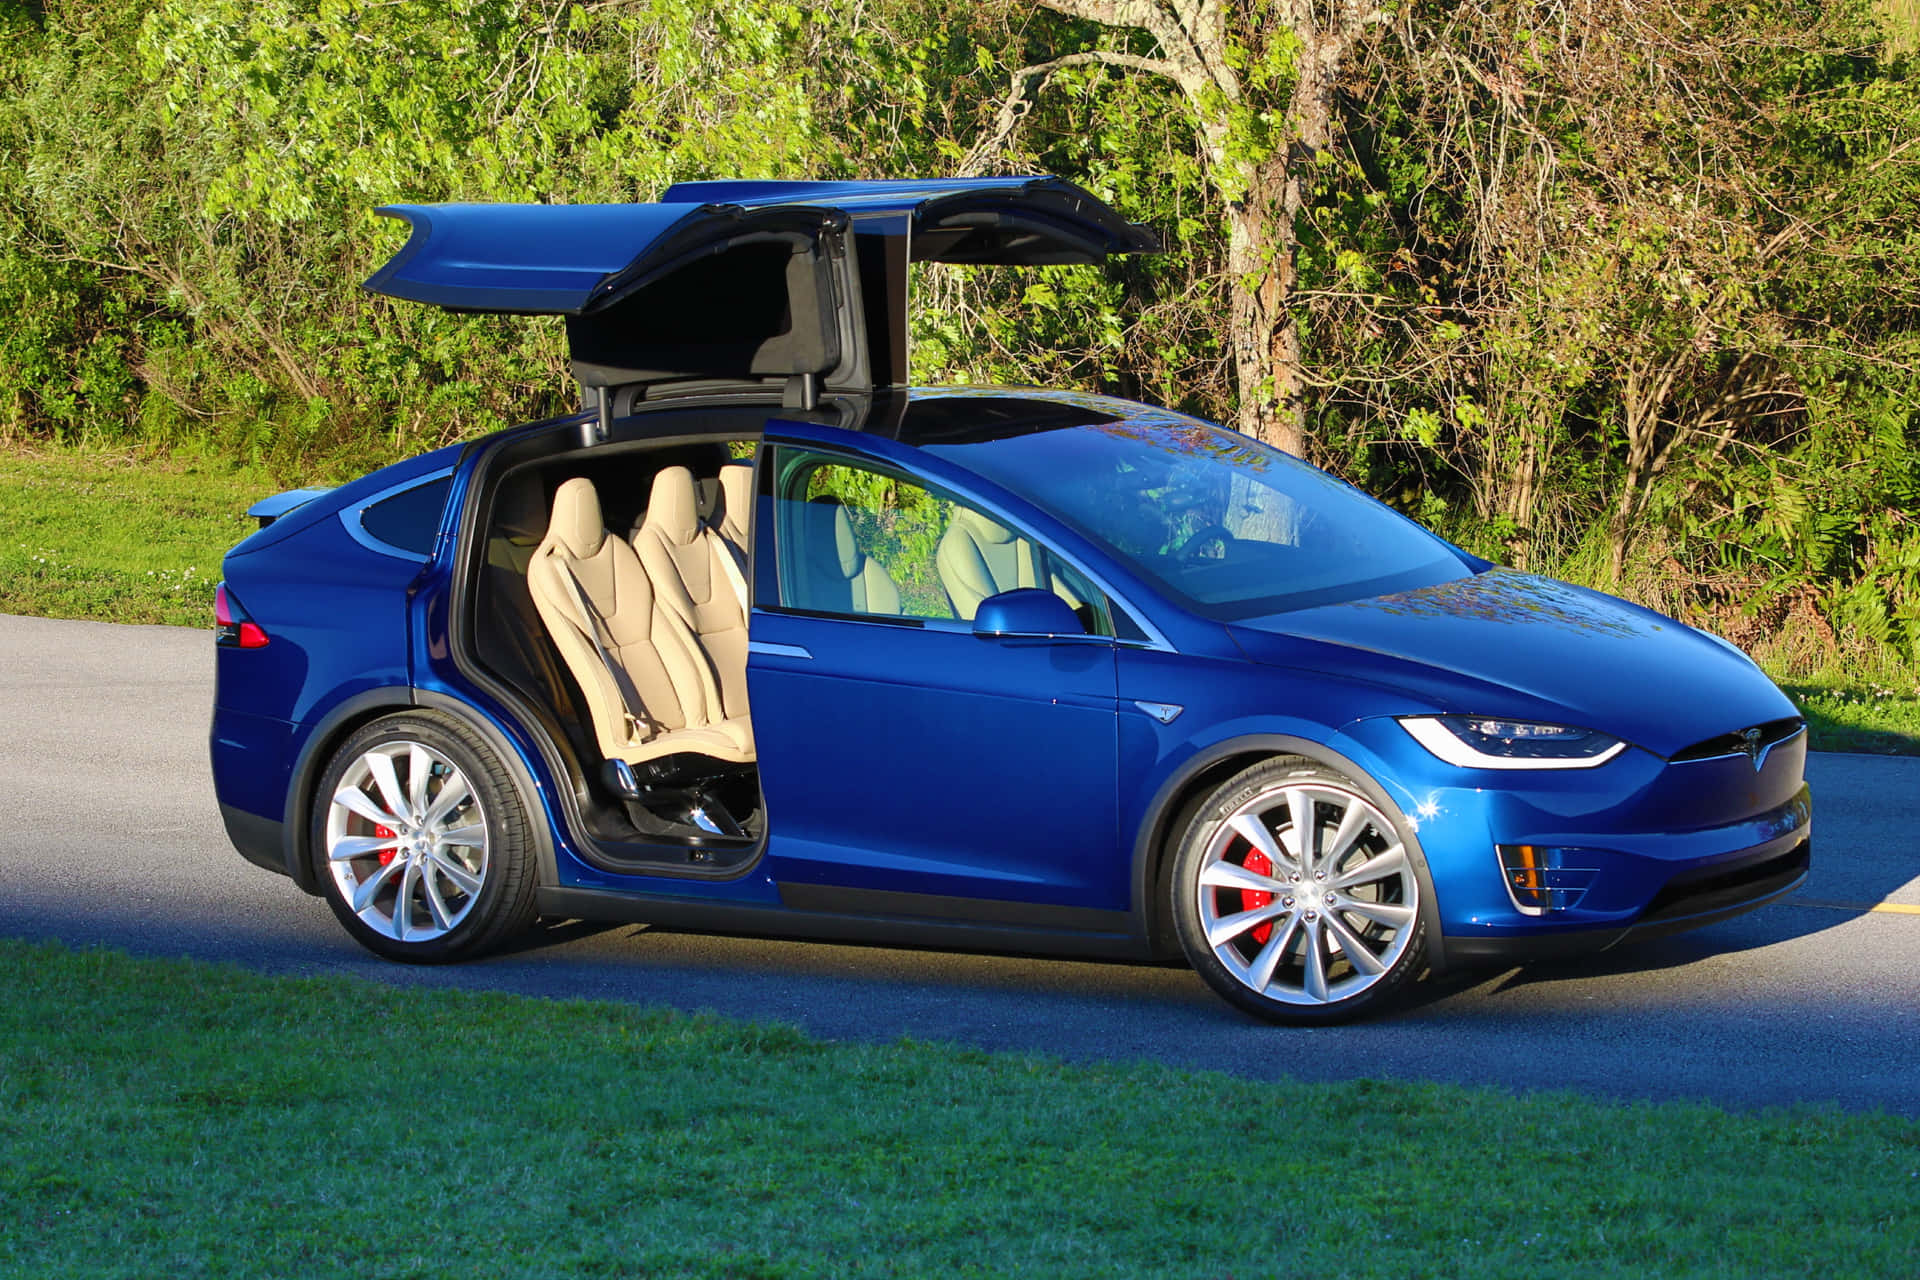 Neonblauesbild Eines Tesla-autos